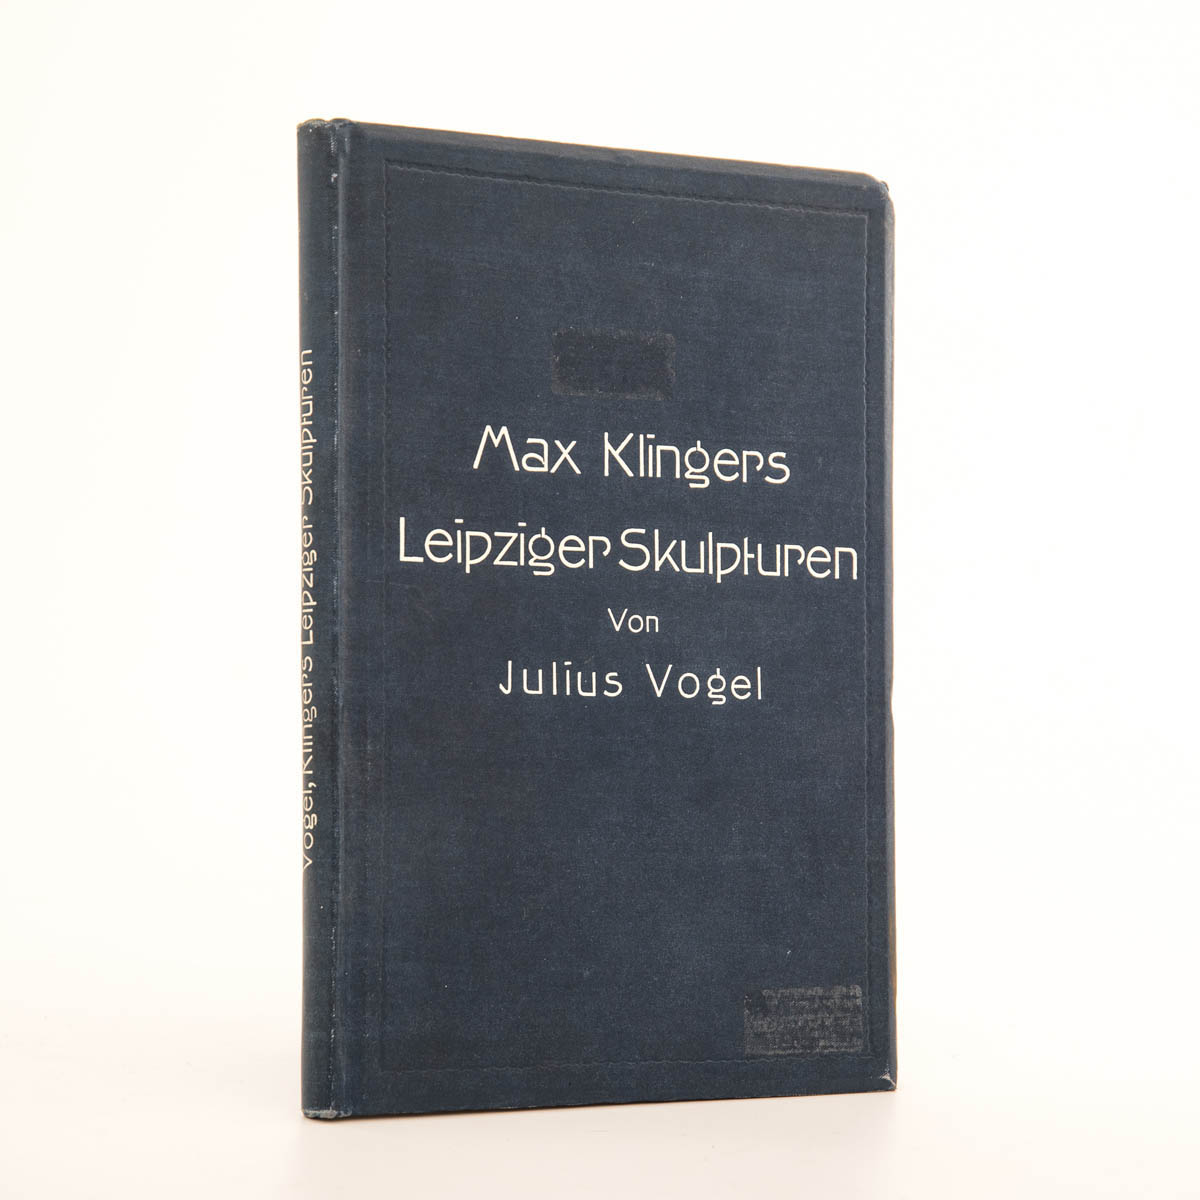 Max Klingers Leipziger Skulpturen Von Prof. Dr. Julius Vogel, mit 30 Abbildungen nach den